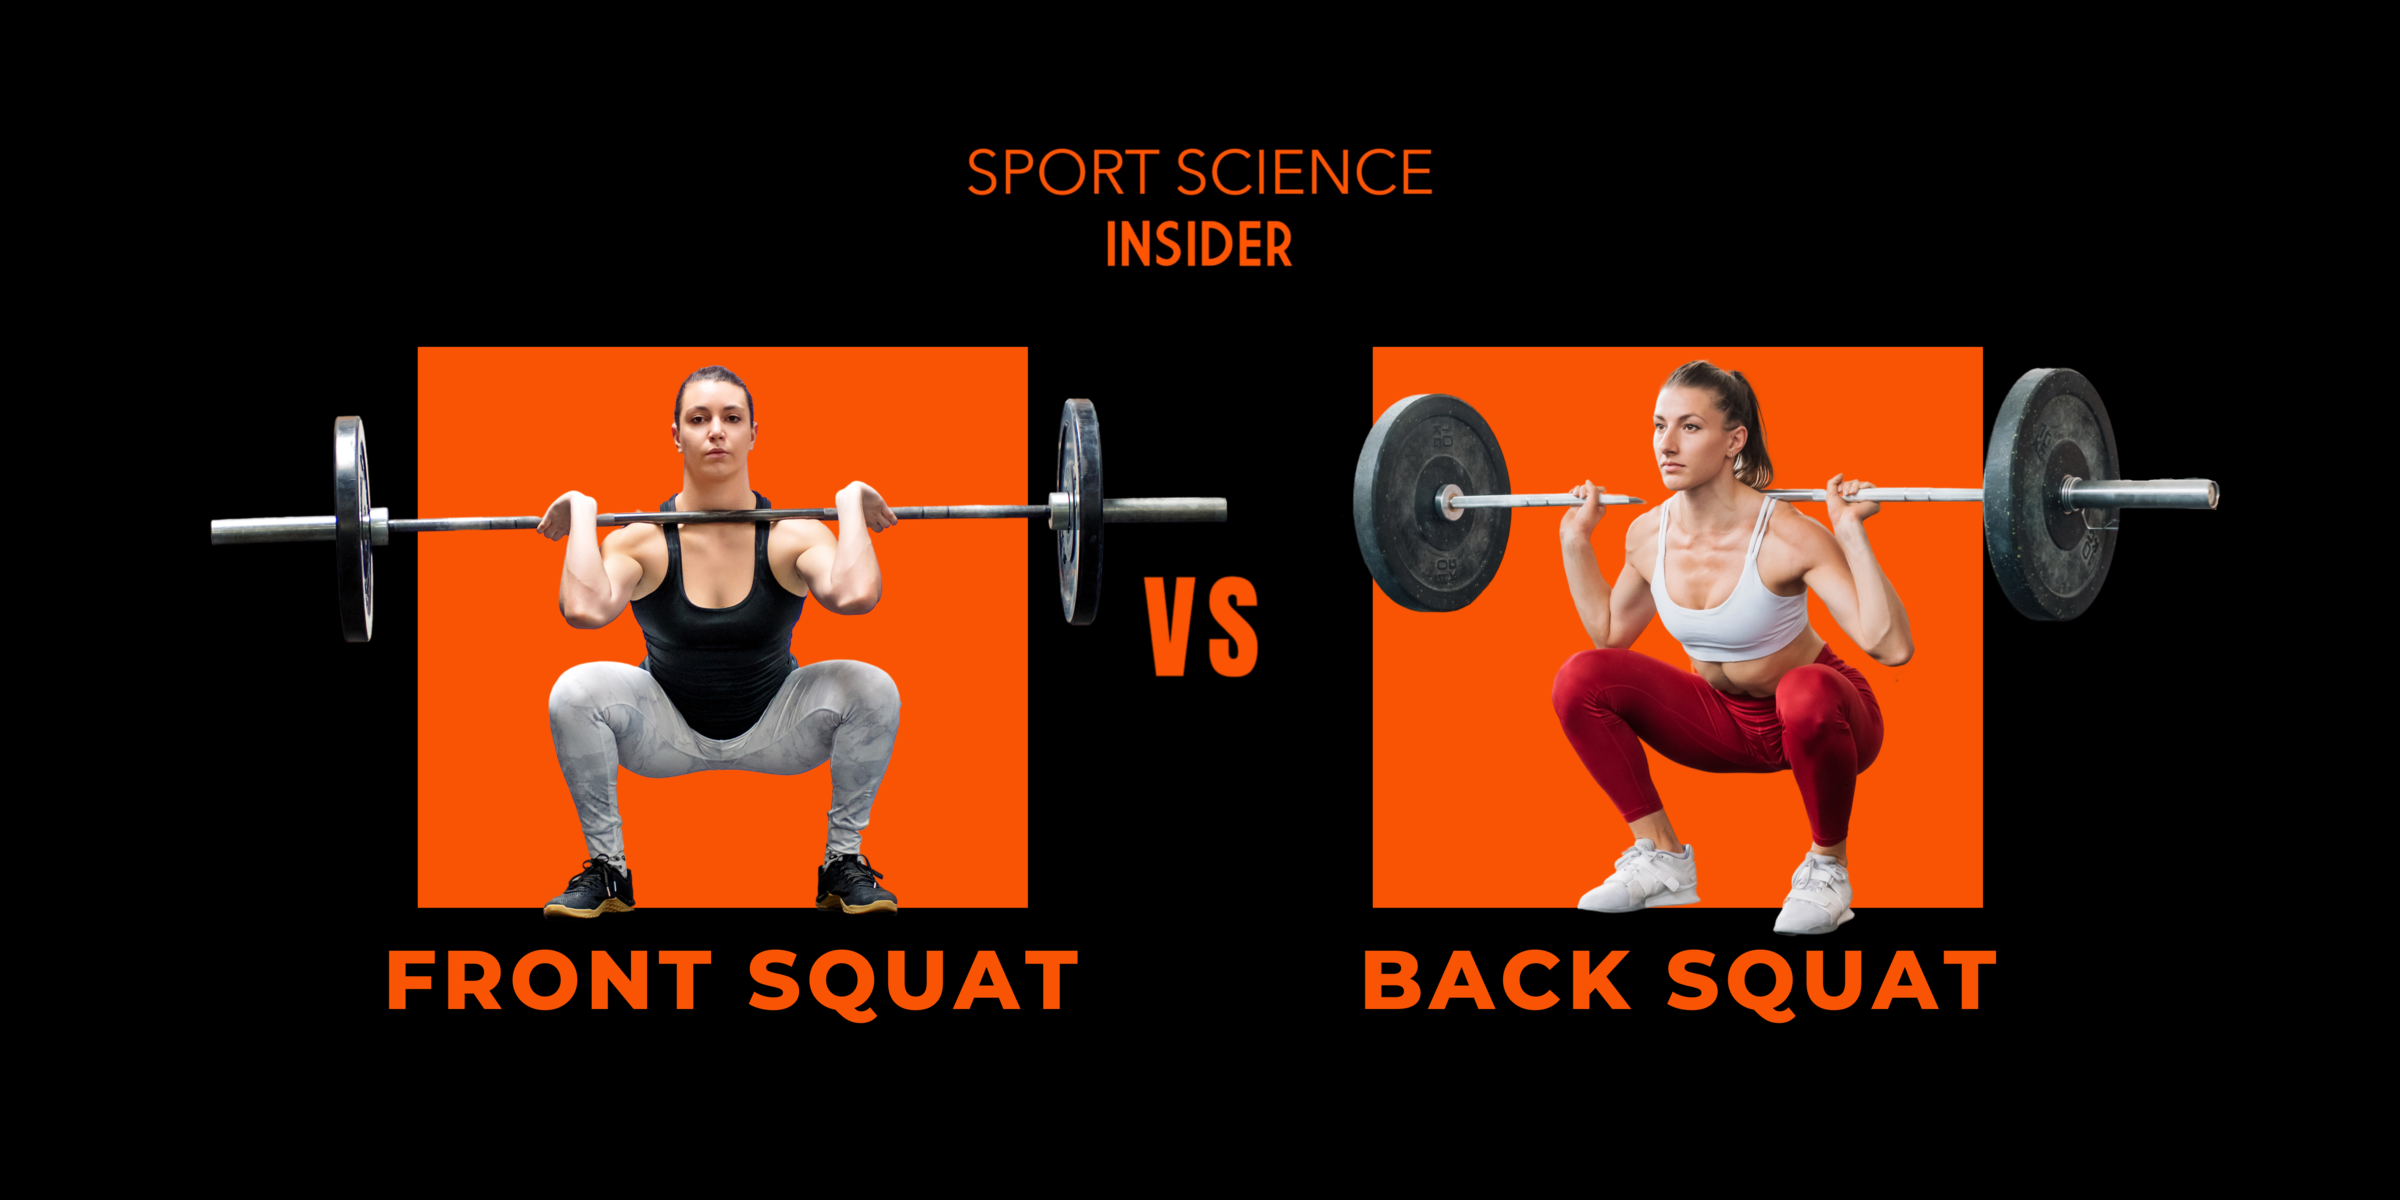 Front squat vs back squat